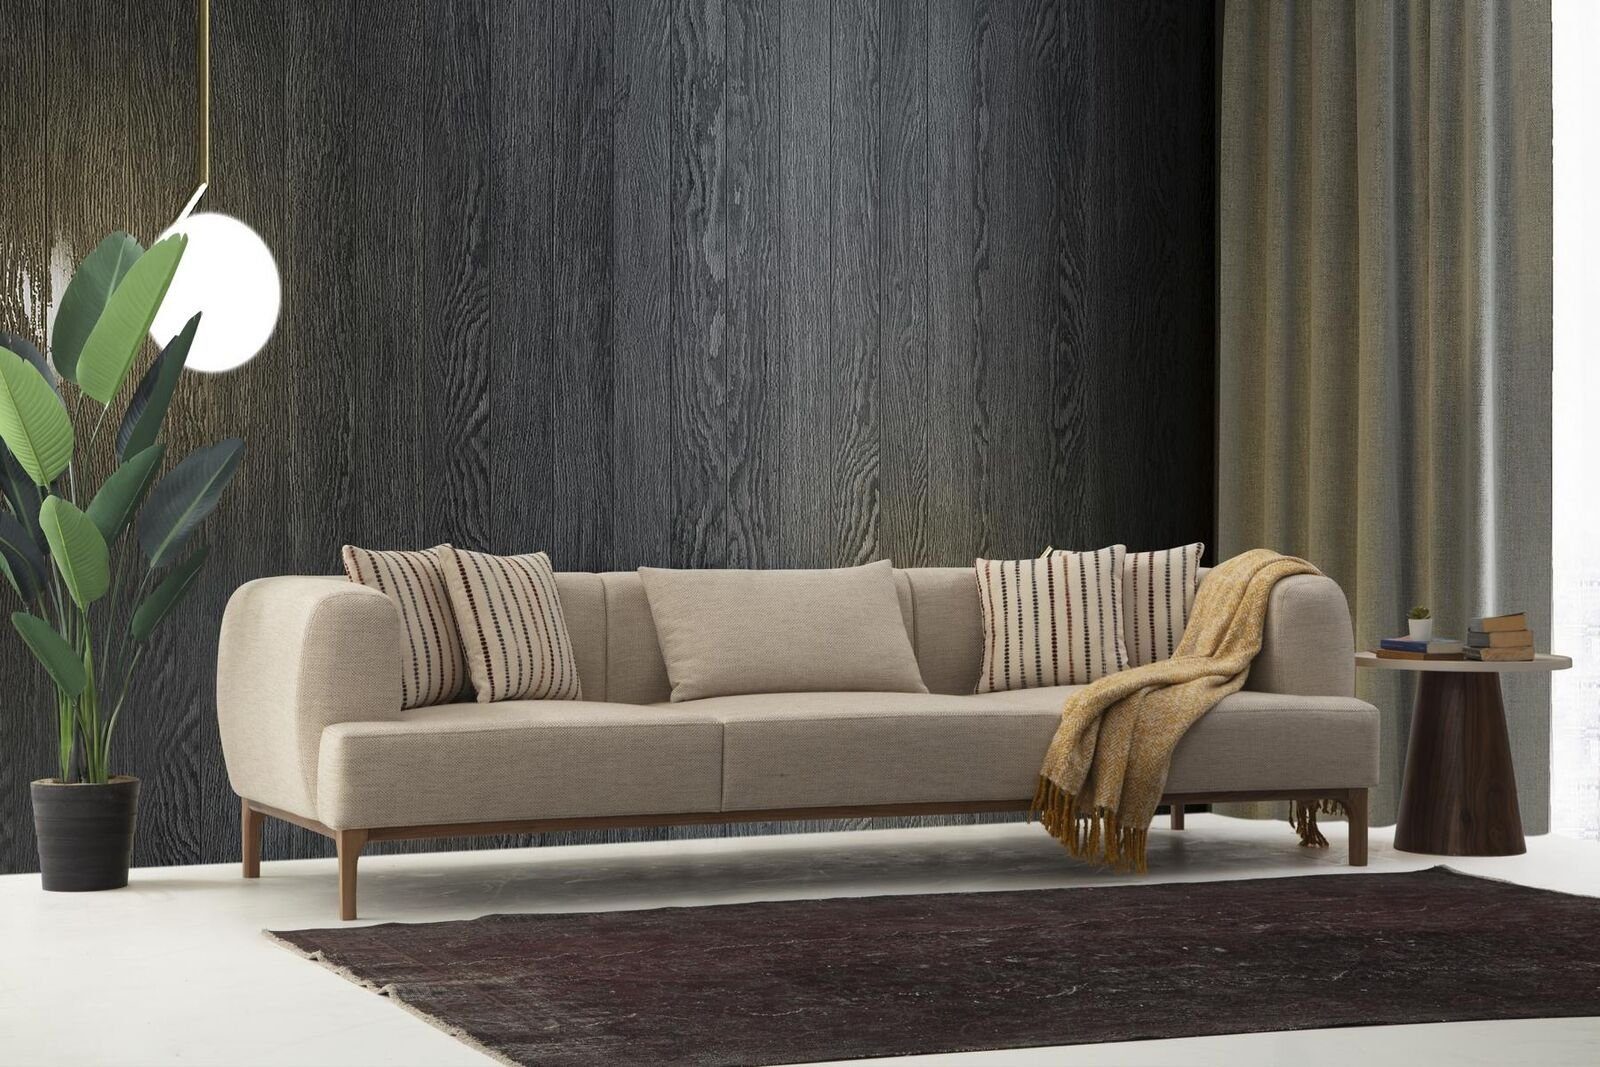 JVmoebel 3-Sitzer Dreisitzer Sofa 3 Sitzer Sofas Beige Stoff Modern Wohnzimmer Luxus Neu, 1 Teile, Made in Europa